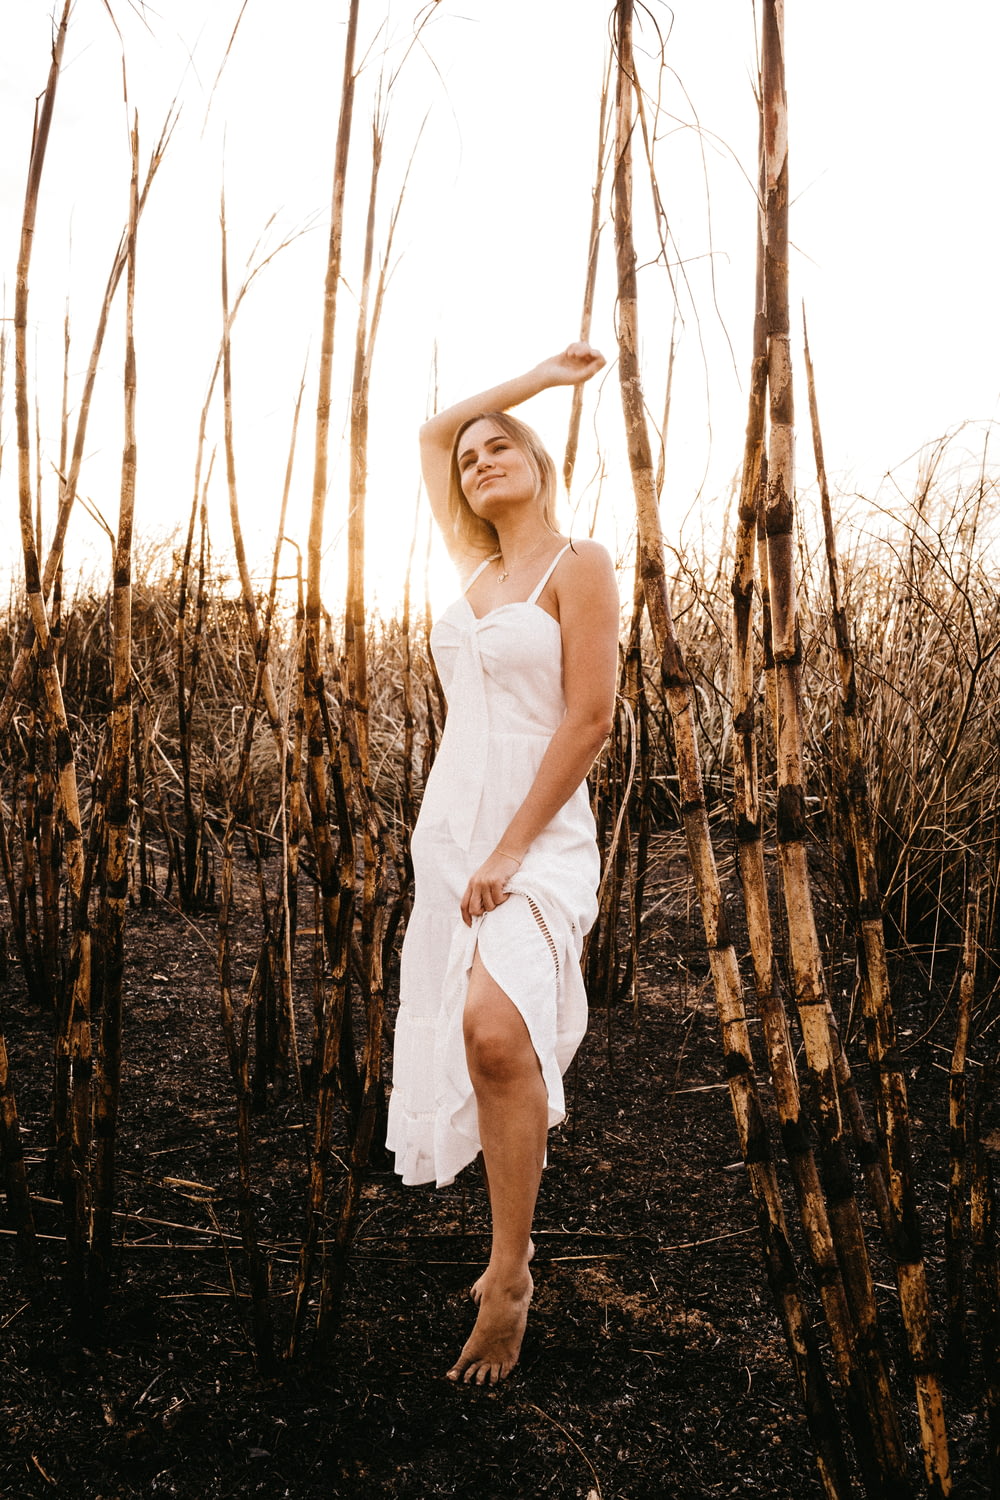 하얀 스파게티 스트랩 드레스를 입은 여자 갈색 잔디밭에 서 있다